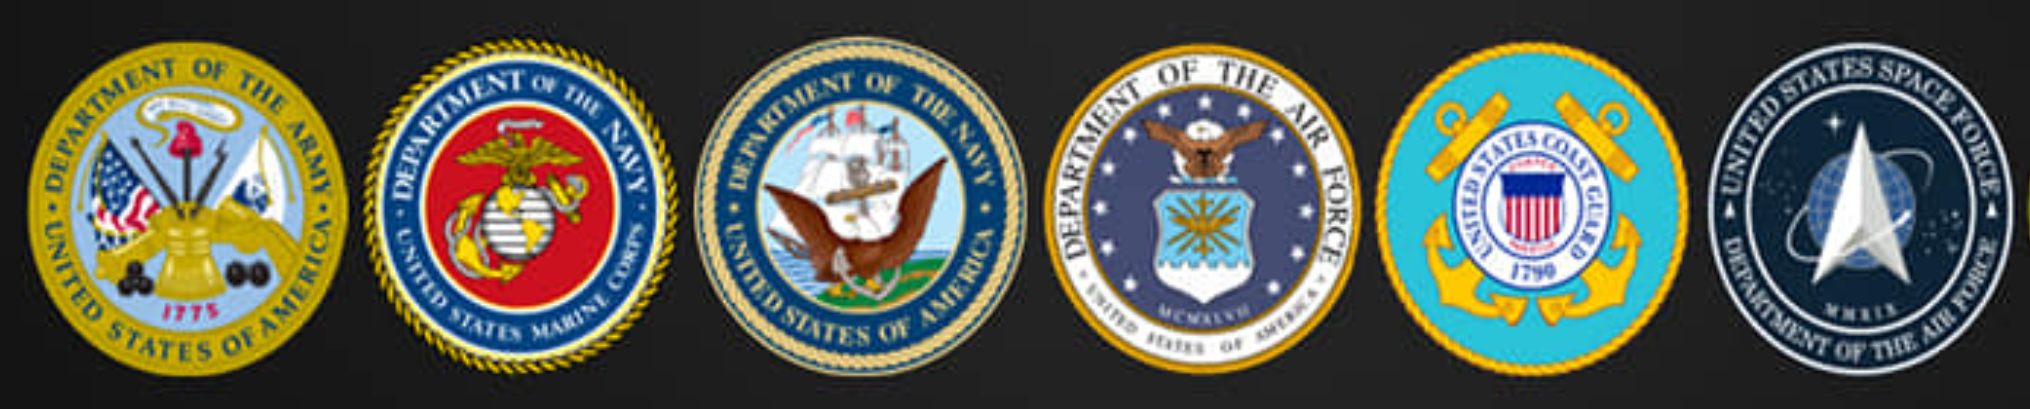 US Veterans Military Logos